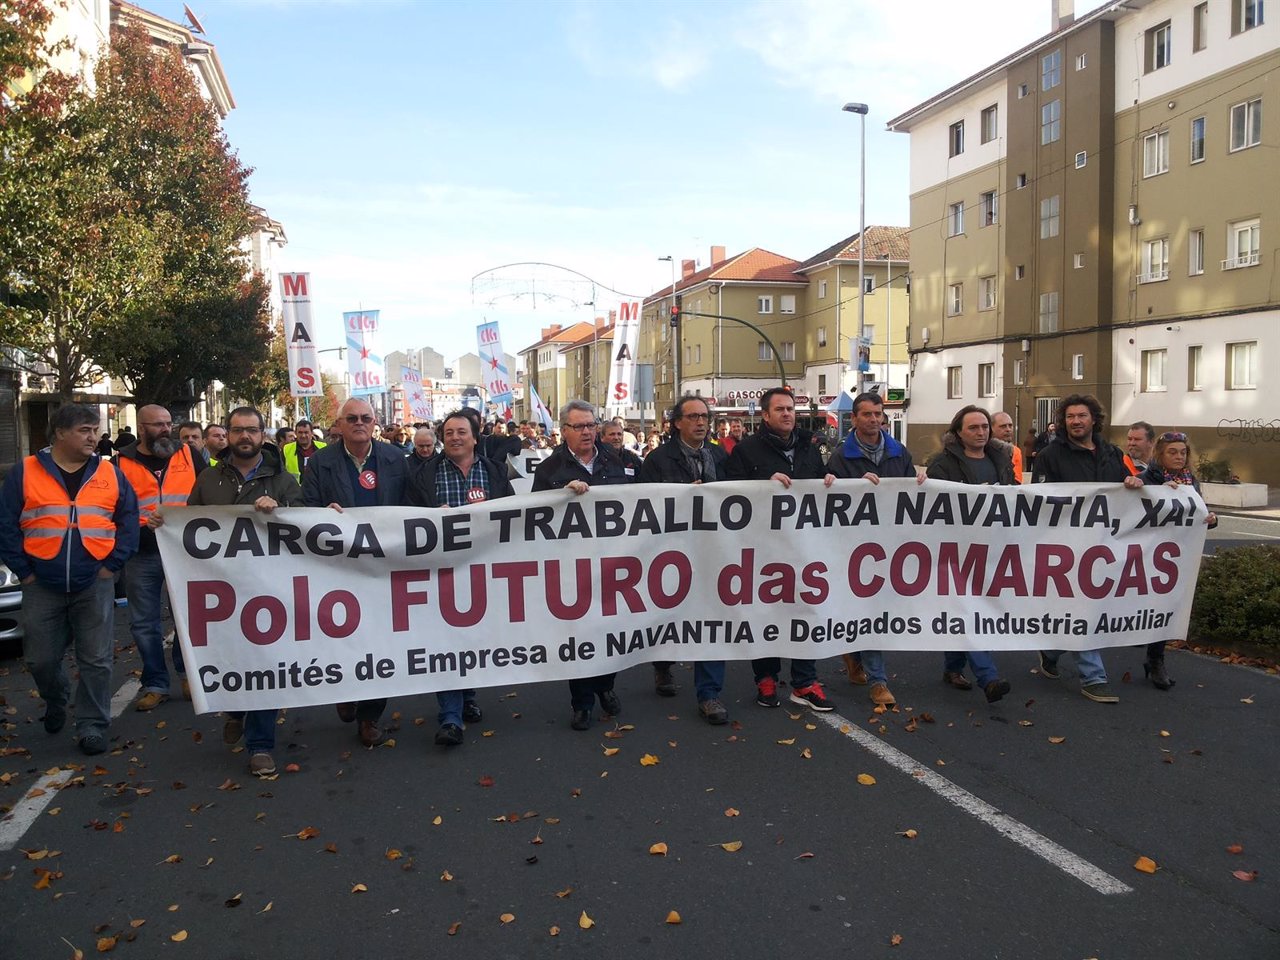 Manifestación para reclamar carga de trabajo para el naval en Ferrol